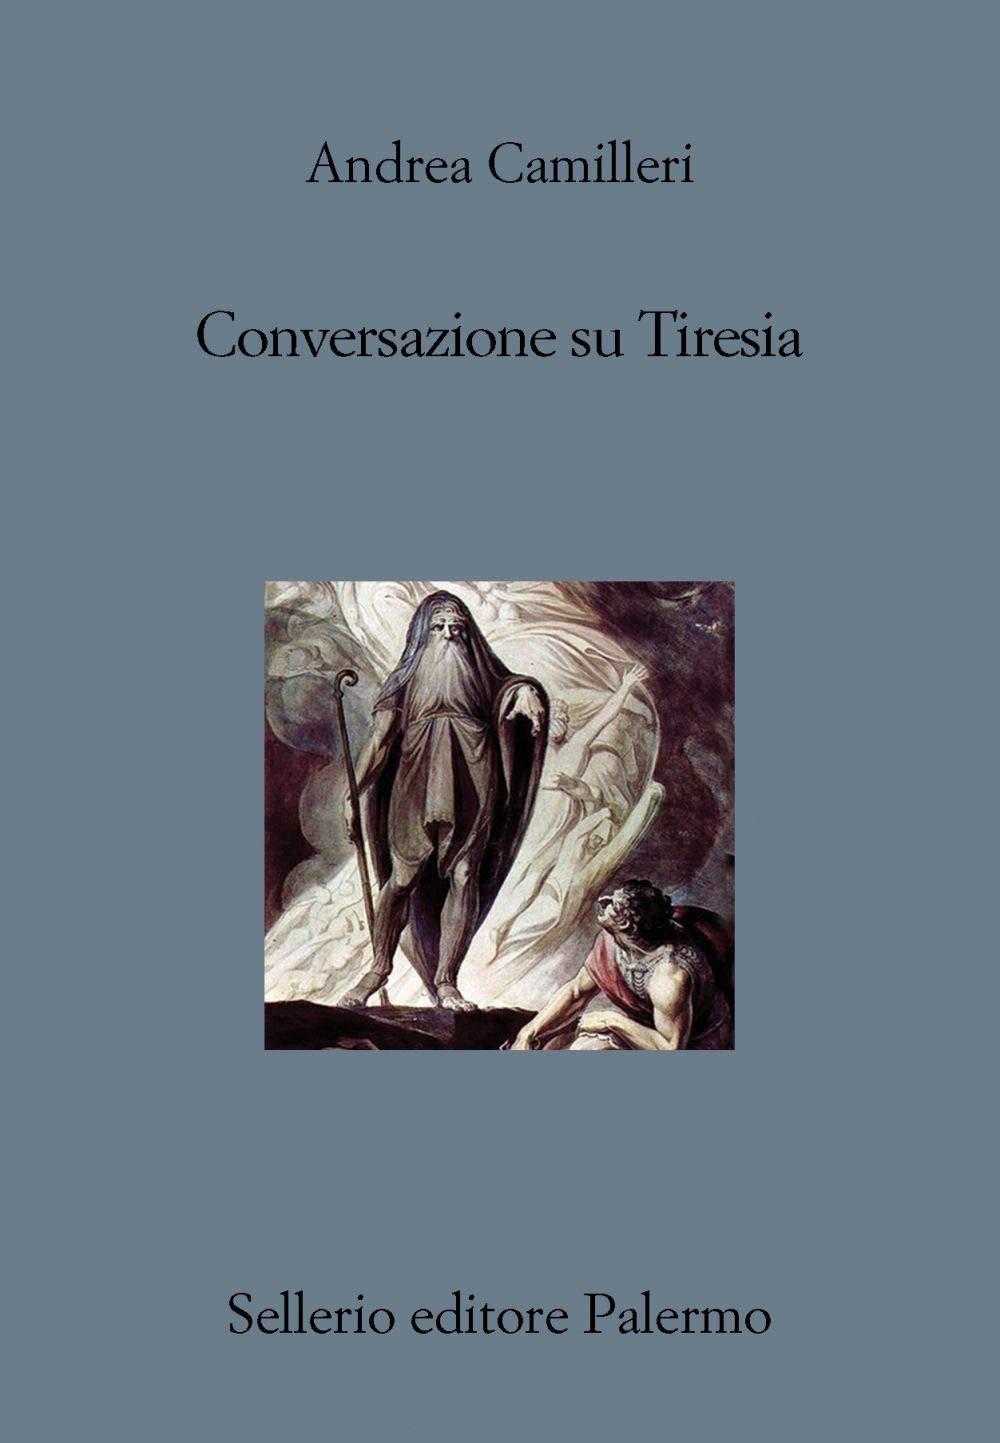 Libro "Conversazione su Tiresia" di Andrea Camilleri